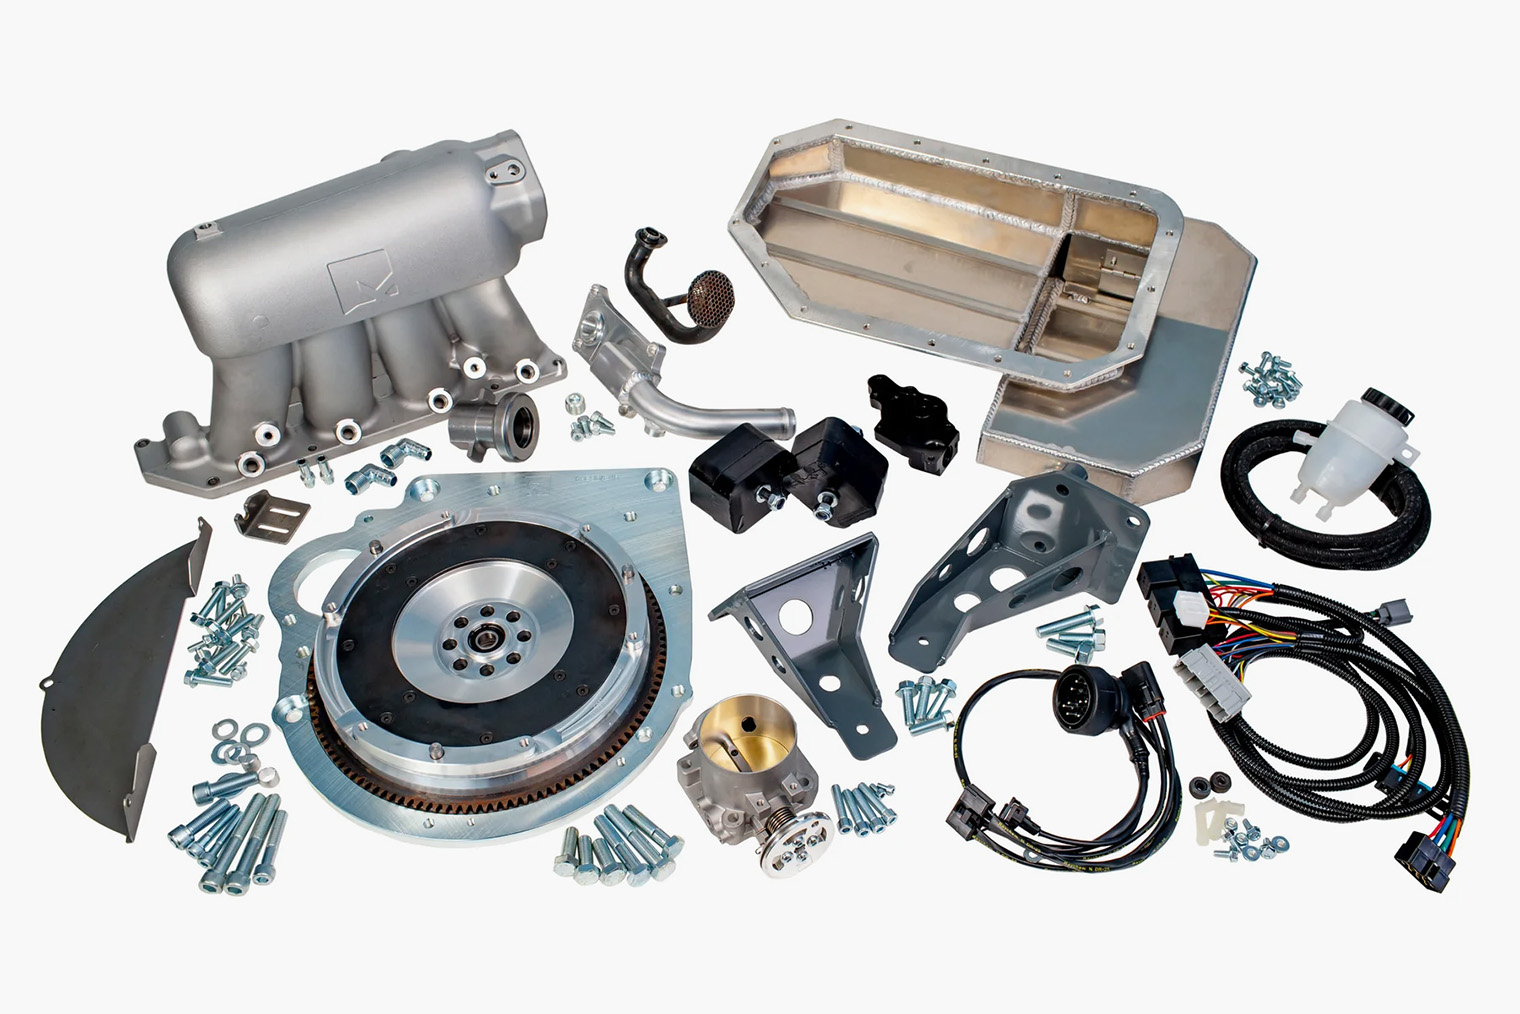 Один из примеров готового набора для популярных свапов нештатных двигателей — детали, которые нужны, чтобы установить двигатель от Хонды в старую BMW 3. Стоит такой набор около 5 тысяч долларов. Источник: kpower.industries